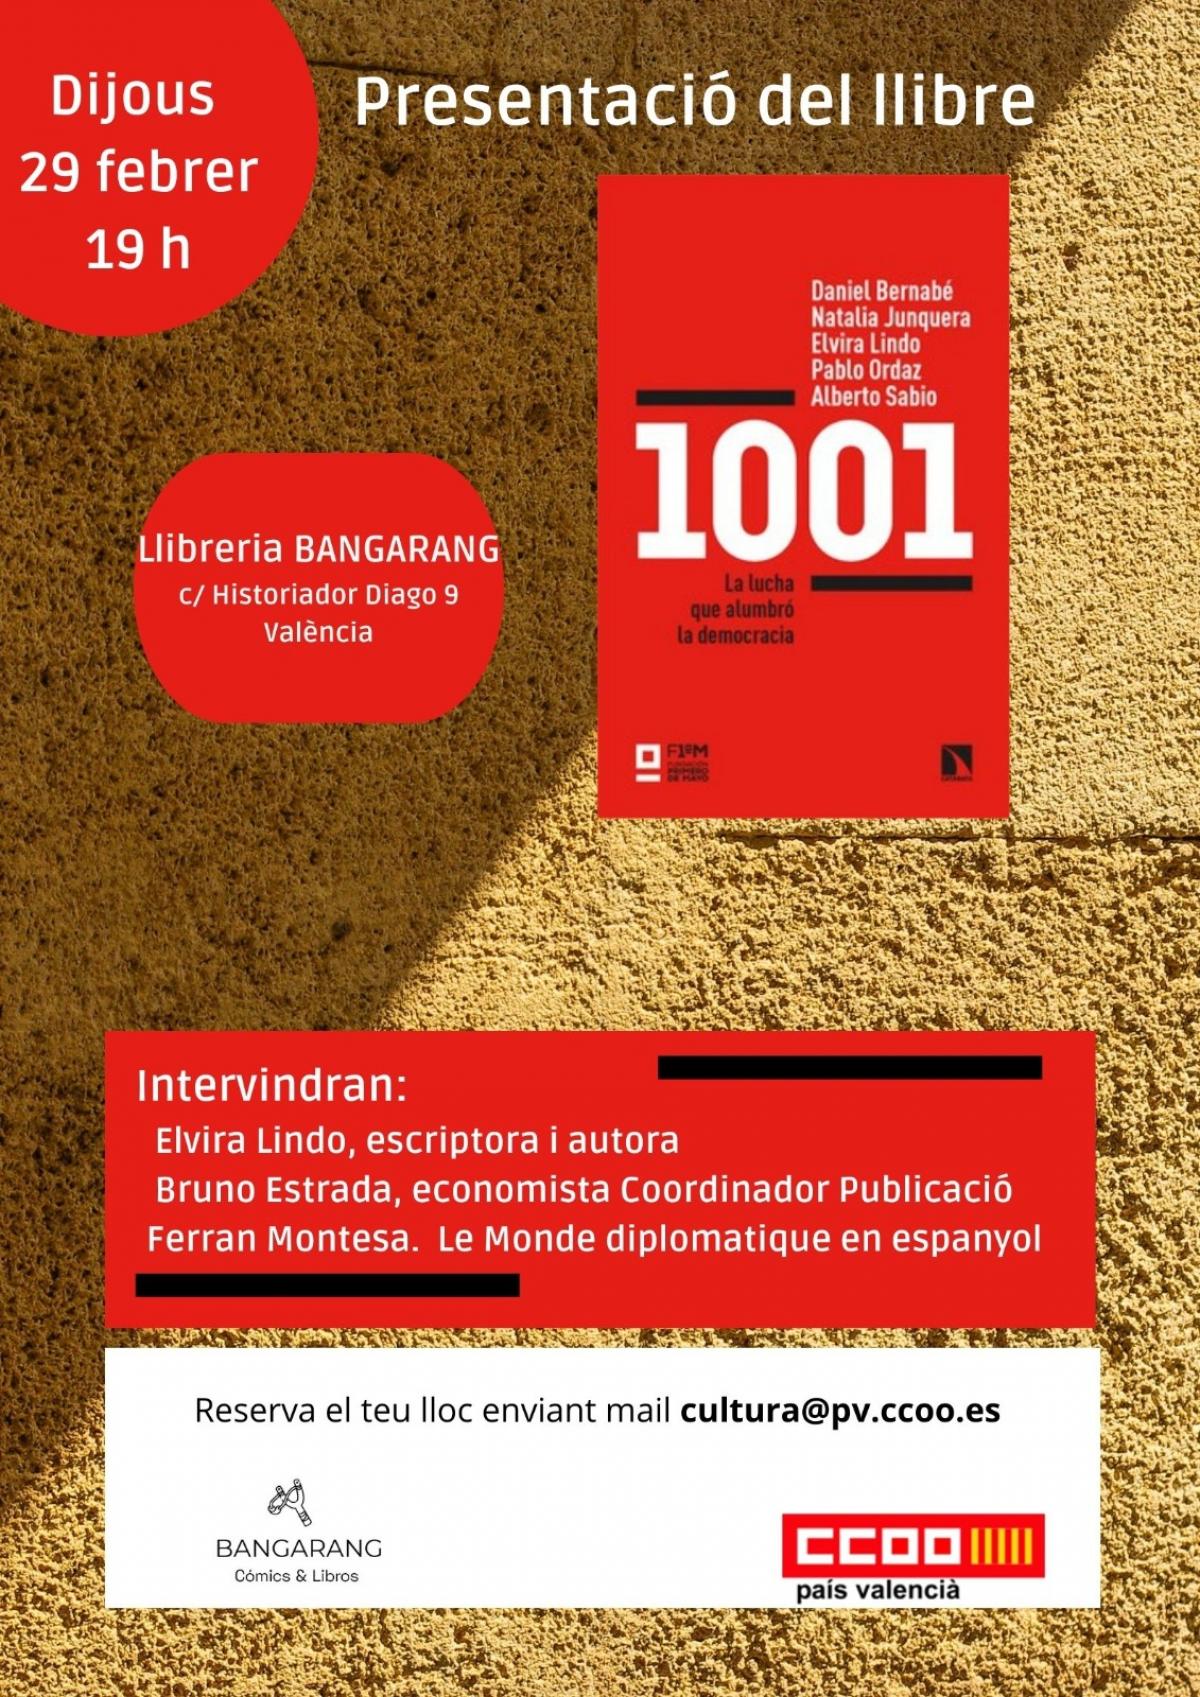 Presentació del llibre a València.